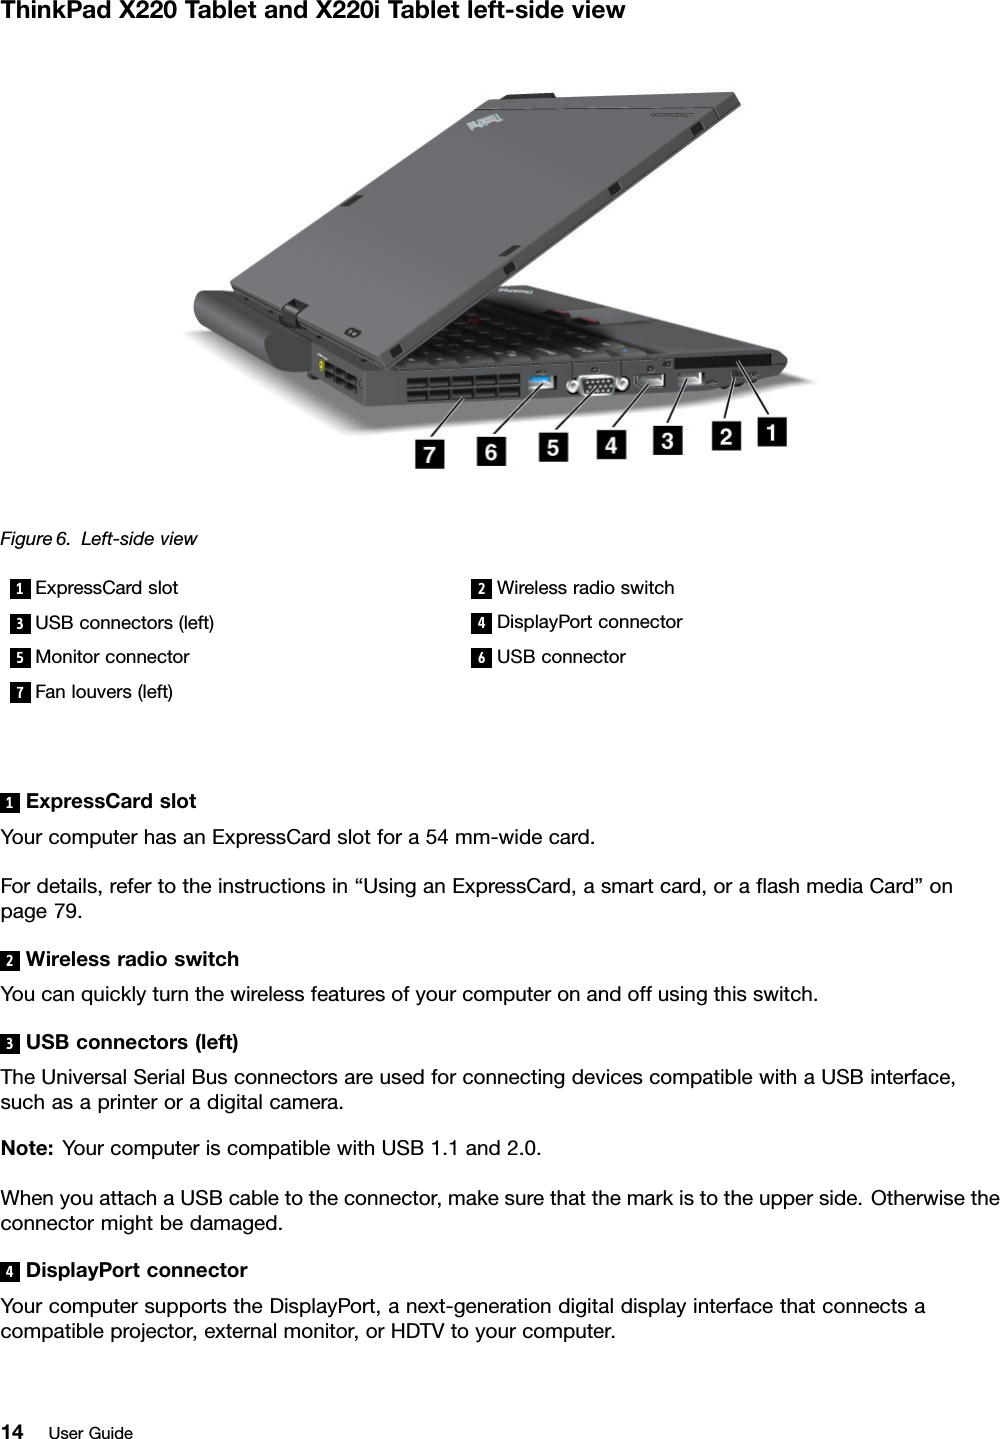 Lenovo thinkpad x220 user guide hay tgheq